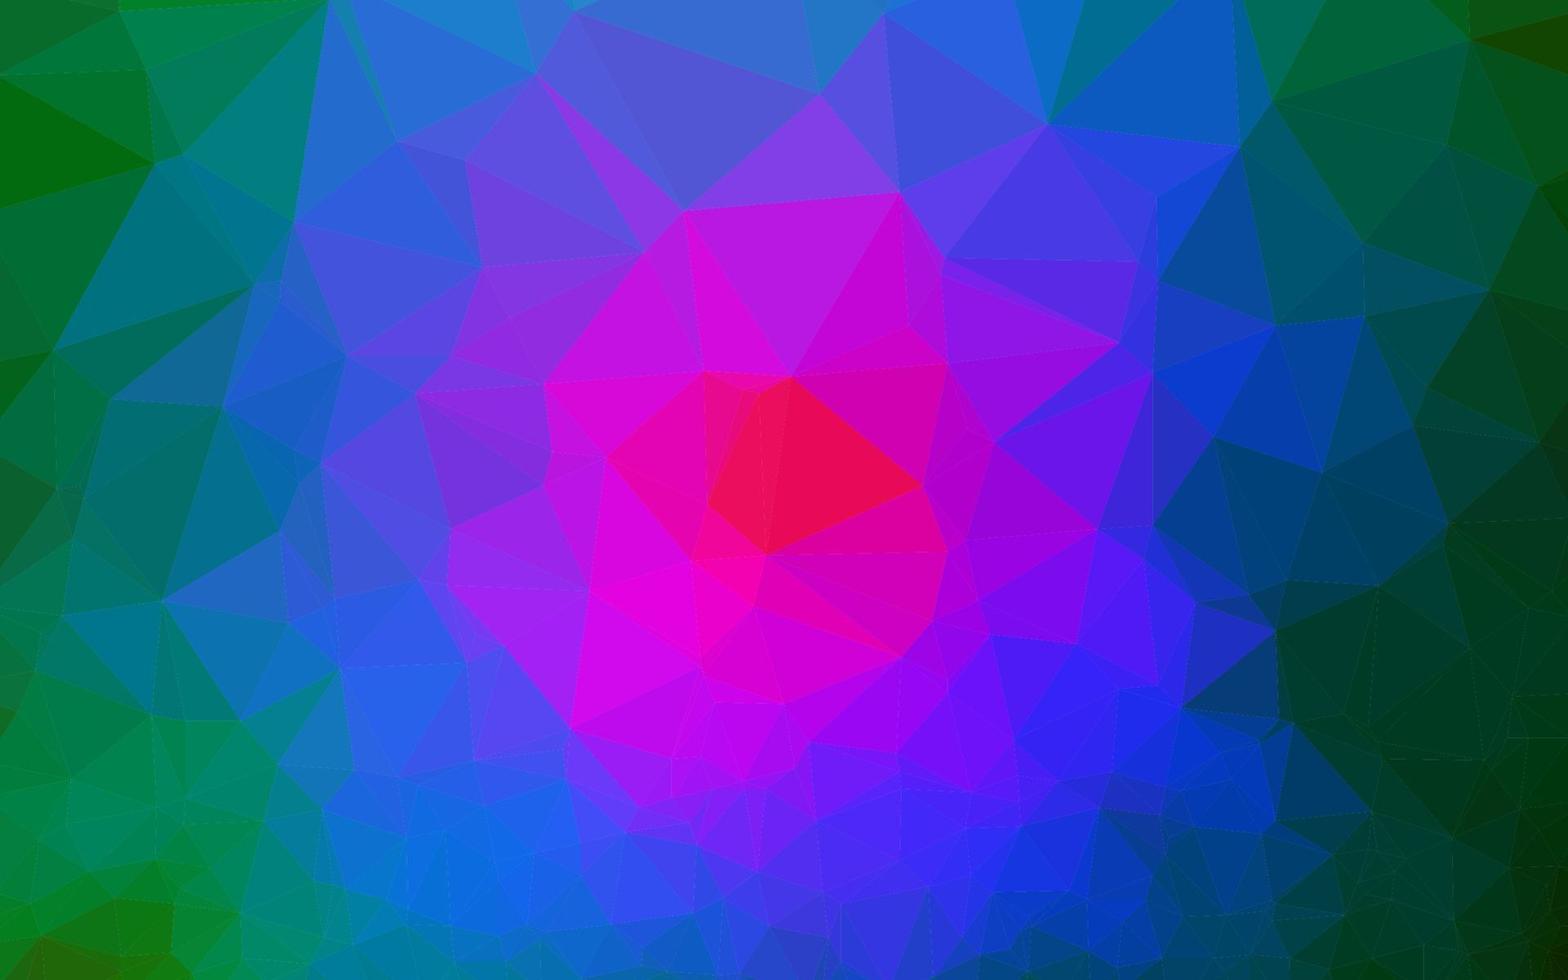 dunkle mehrfarbige, verschwommene Dreiecksvorlage des Regenbogenvektors. vektor